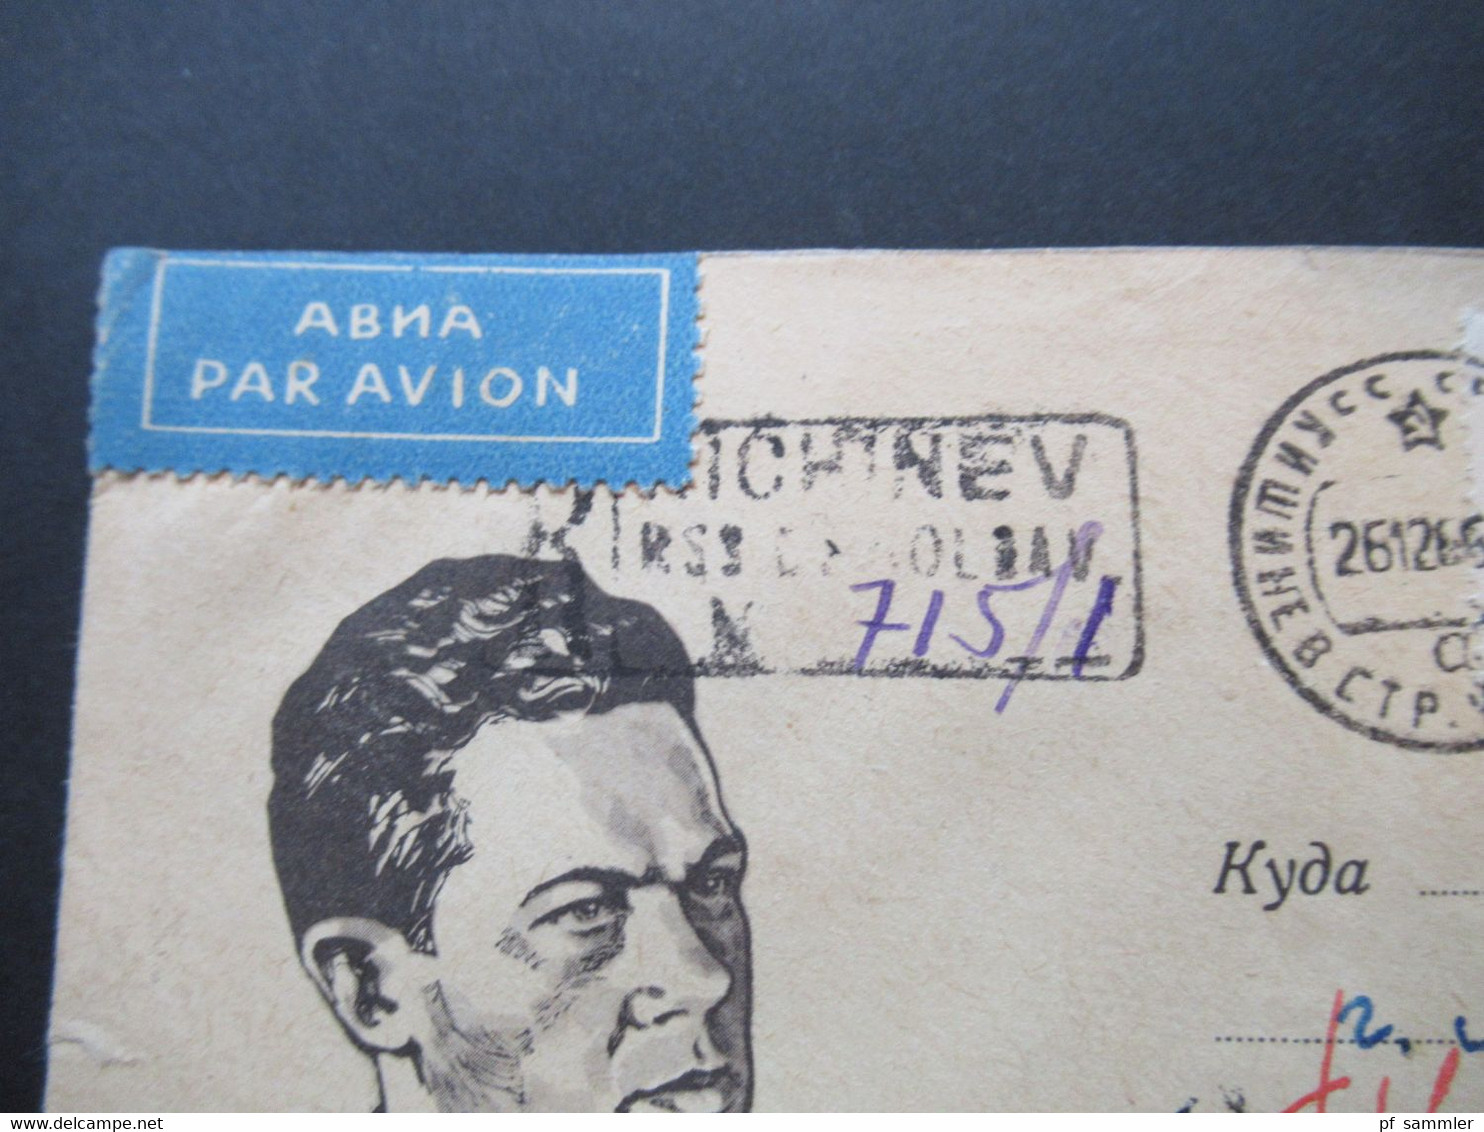 Sowjetunion UdSSR GA Bildmschläge ca. 1920er - 80er Jahre insg. 57 Stück fast alles nach Polen gelaufen! auch R-Briefe